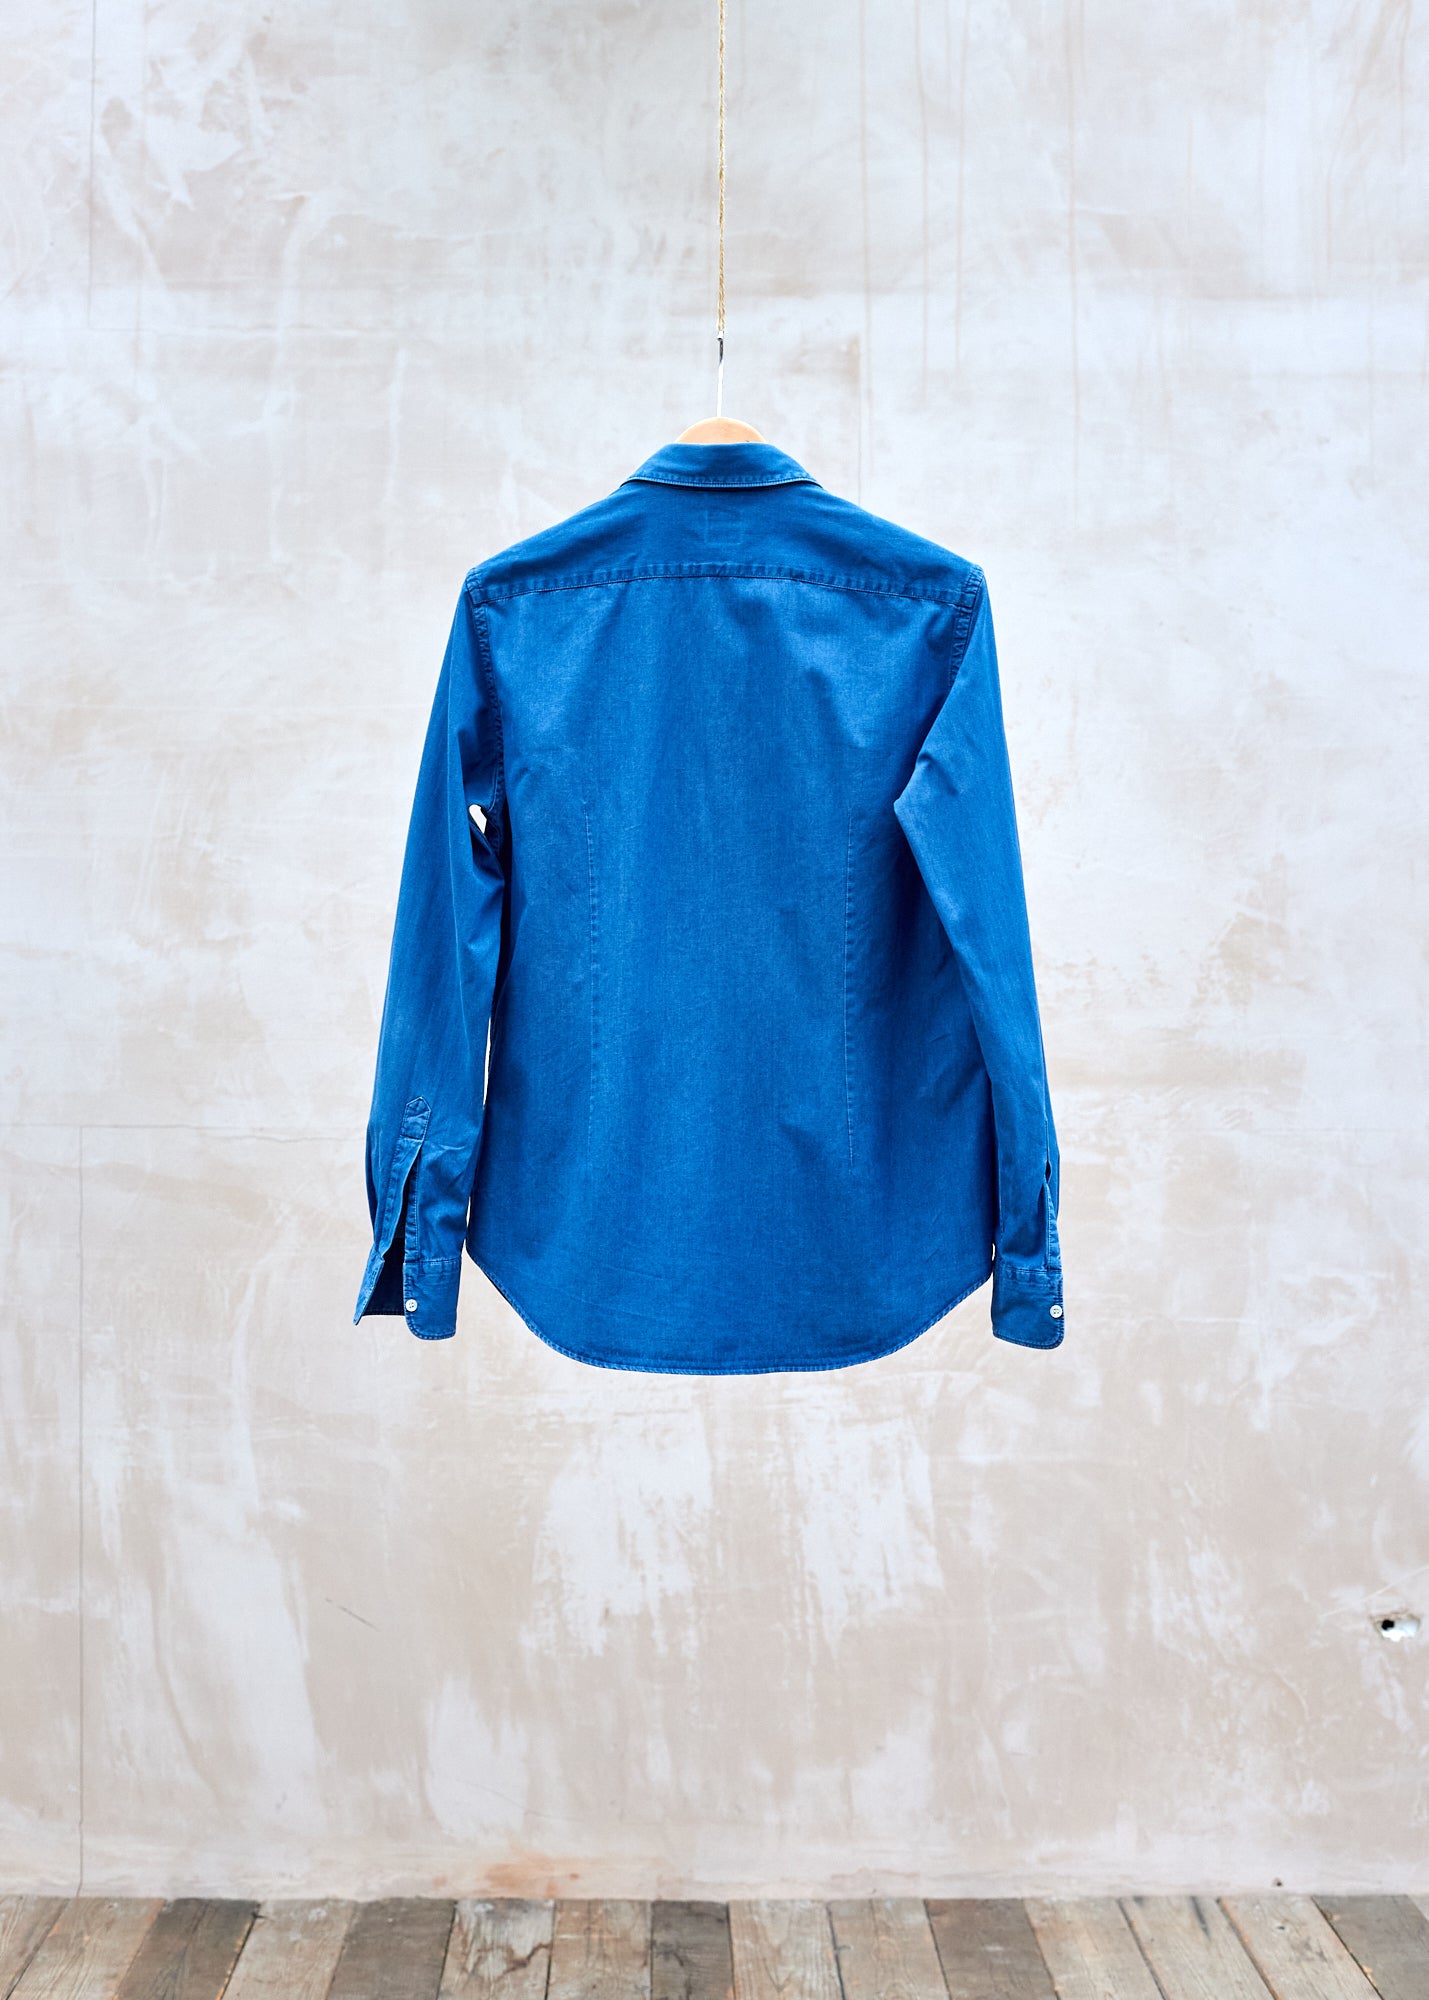 Aspesi Mid-Blue 100% Cotton Denim Shirt - L